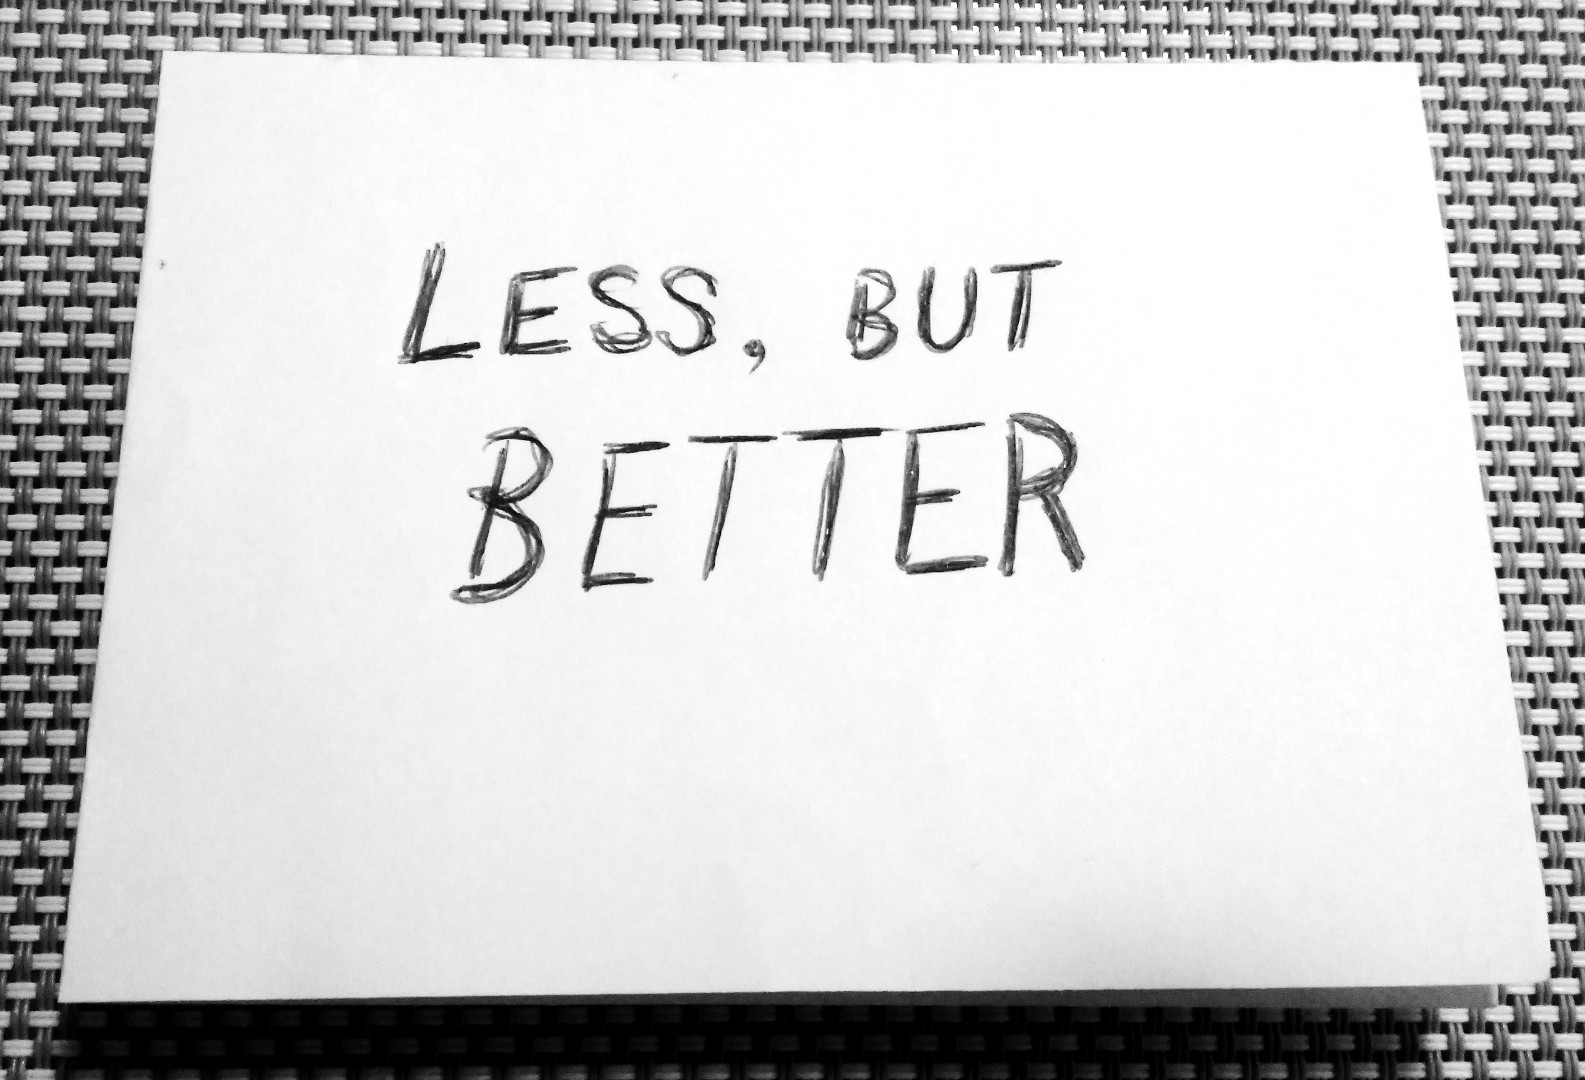 Less, but better